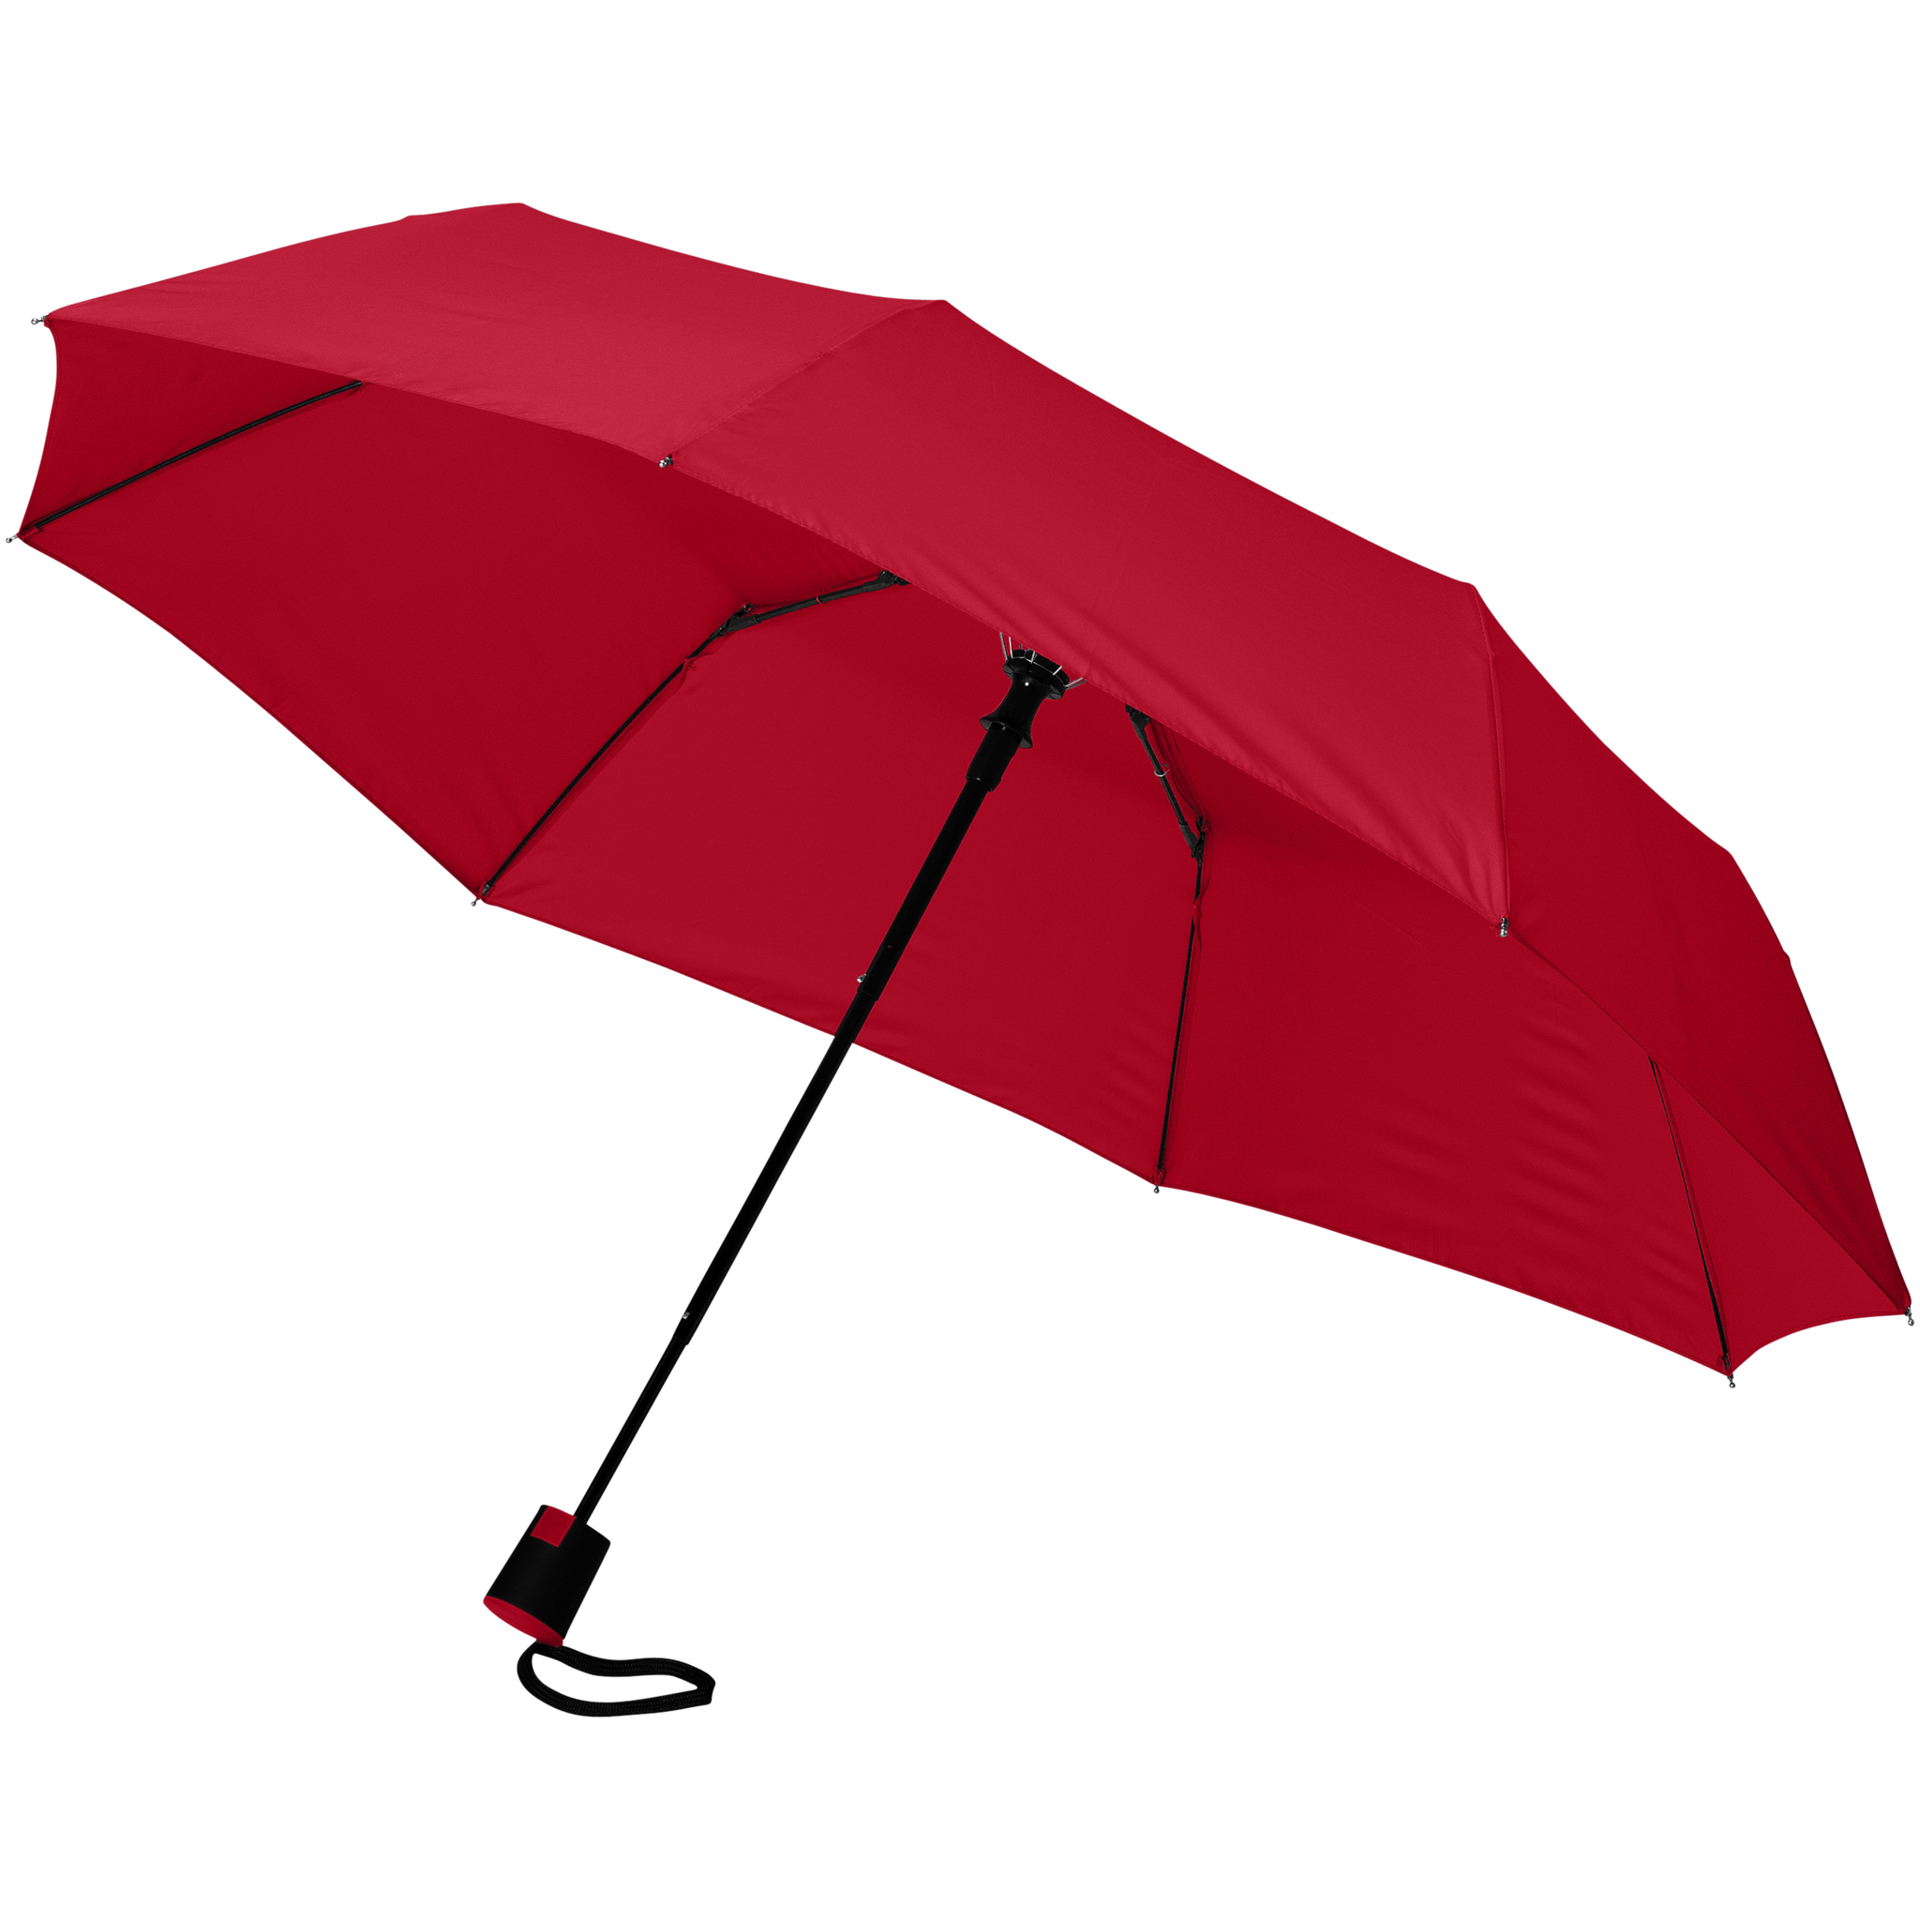 21" foldable auto open umbrella in red